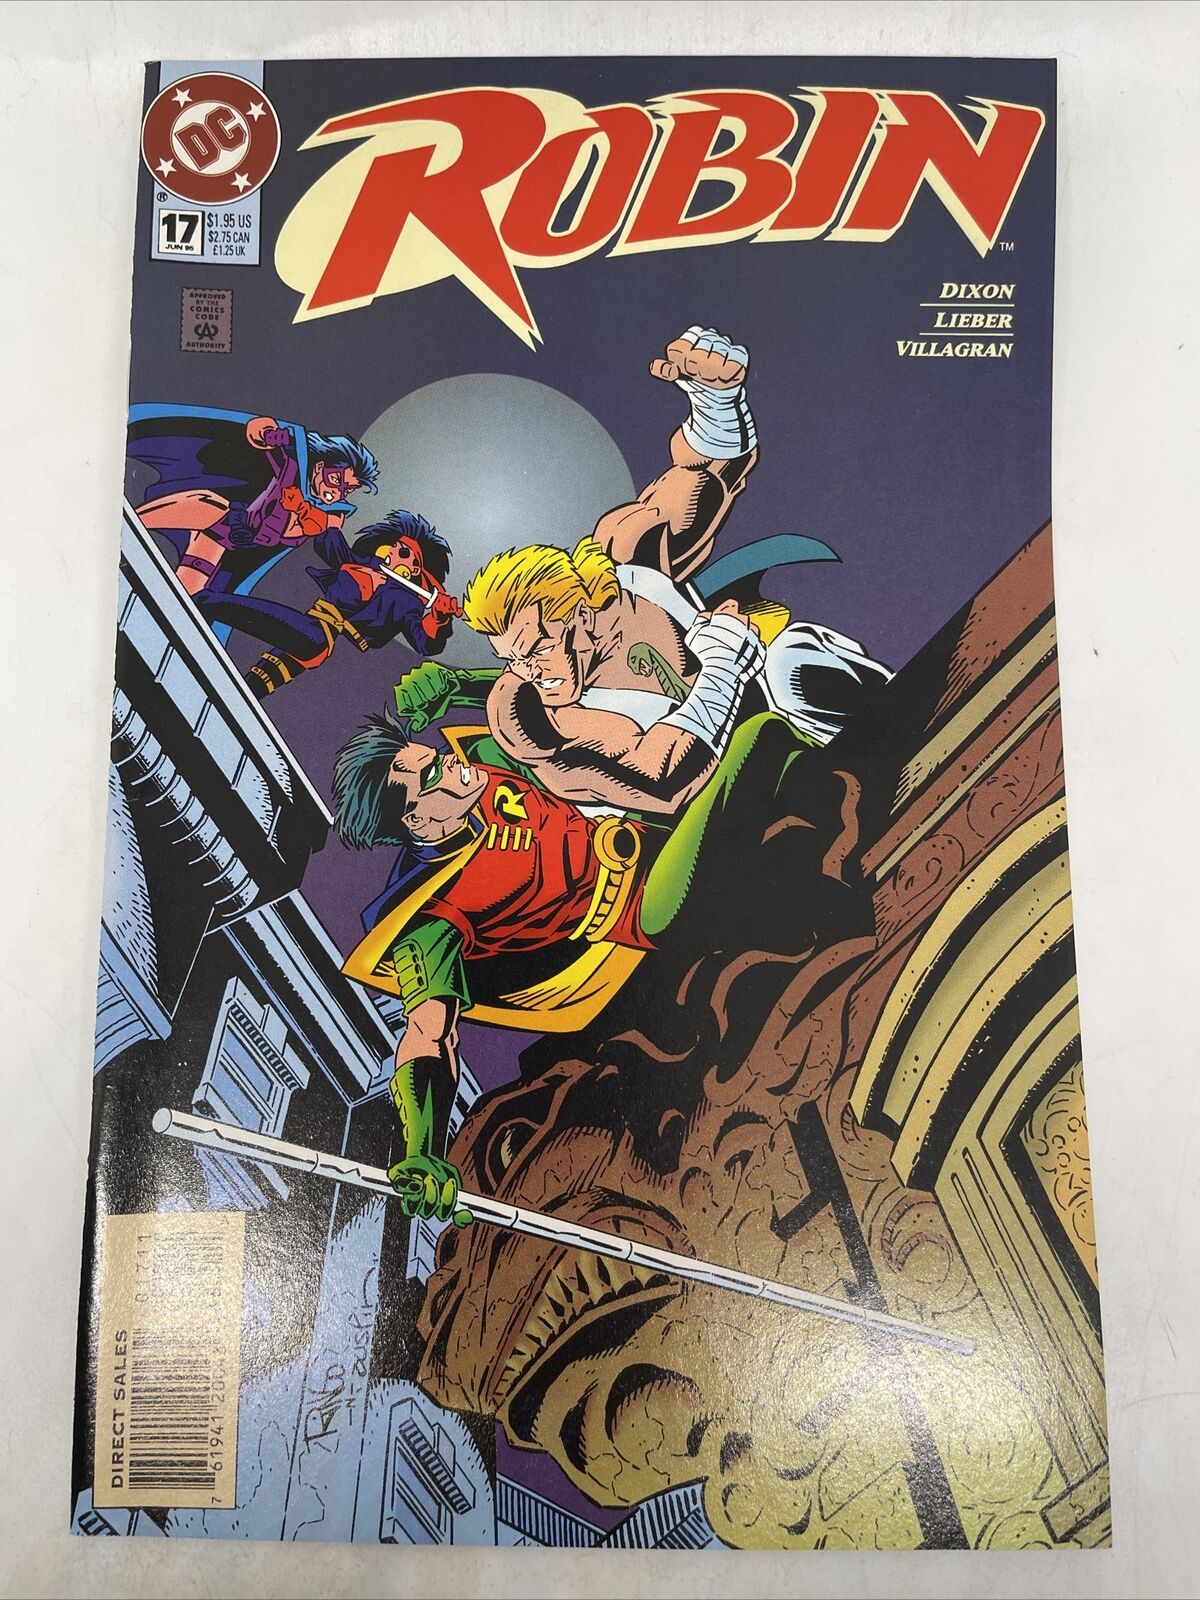 Robin #17 June 1995DC Comics